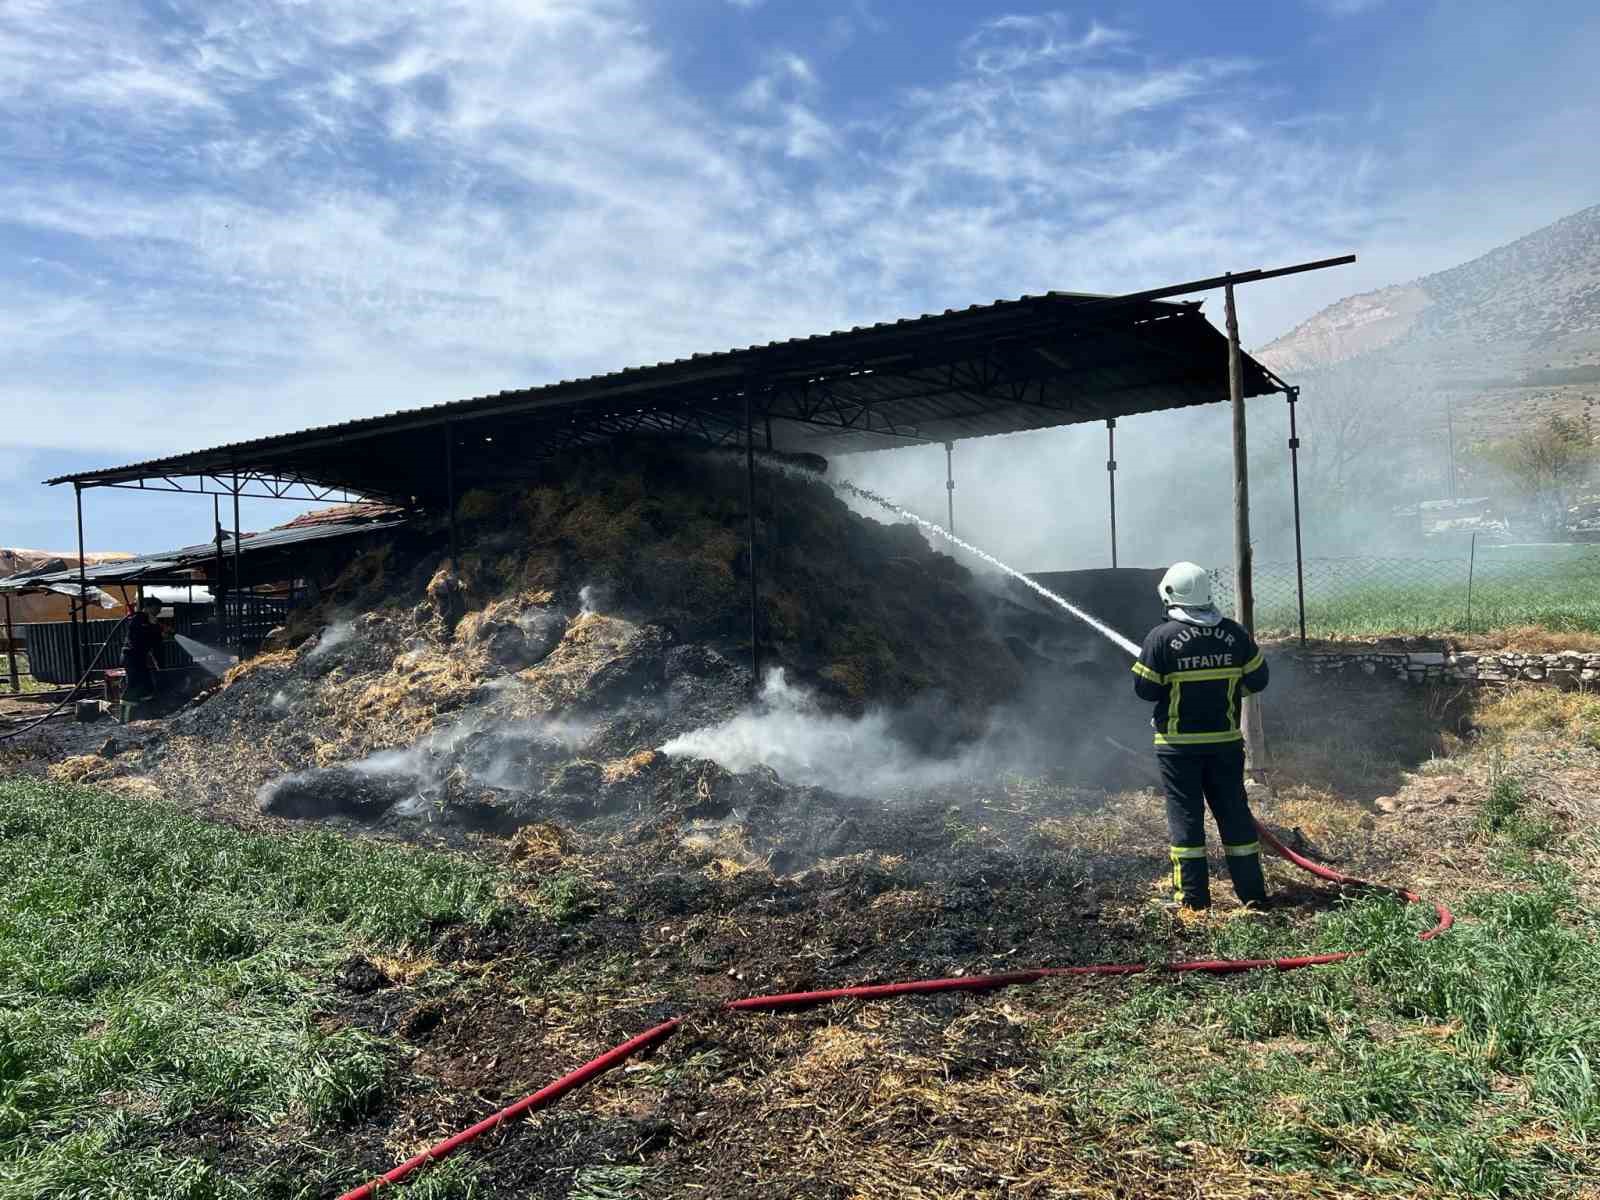 Burdur’da kaynak makinesinden çıkan yangında bin saman balyası yandı: 1 yaralı
